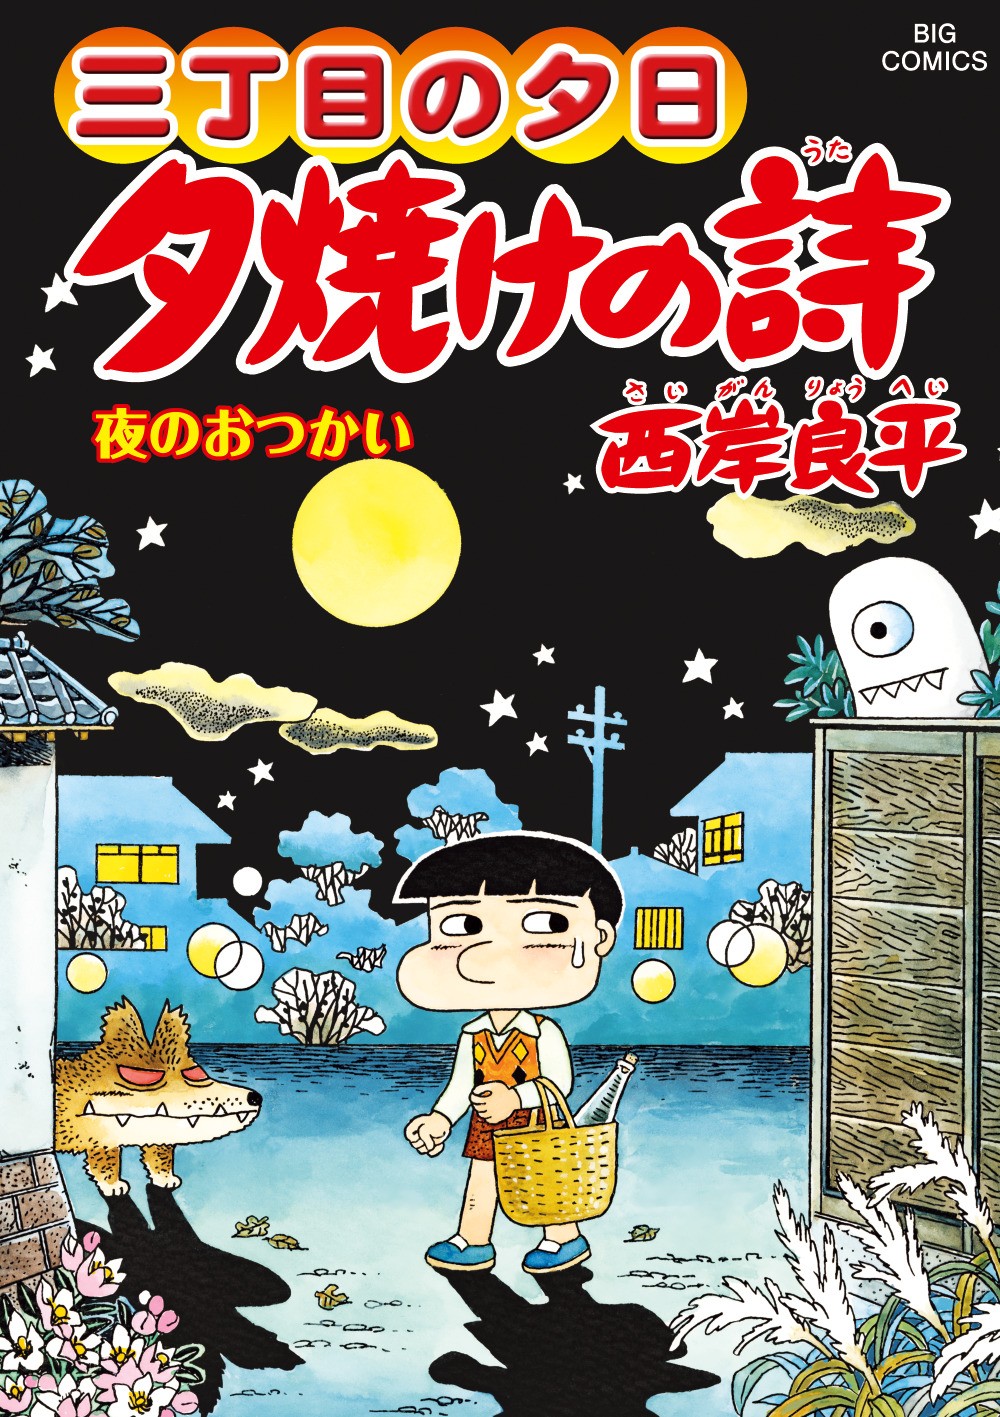 漫画『三丁目の夕日』連載45年で1000回到達 昭和30年代の日本の暮らし描く | ORICON NEWS